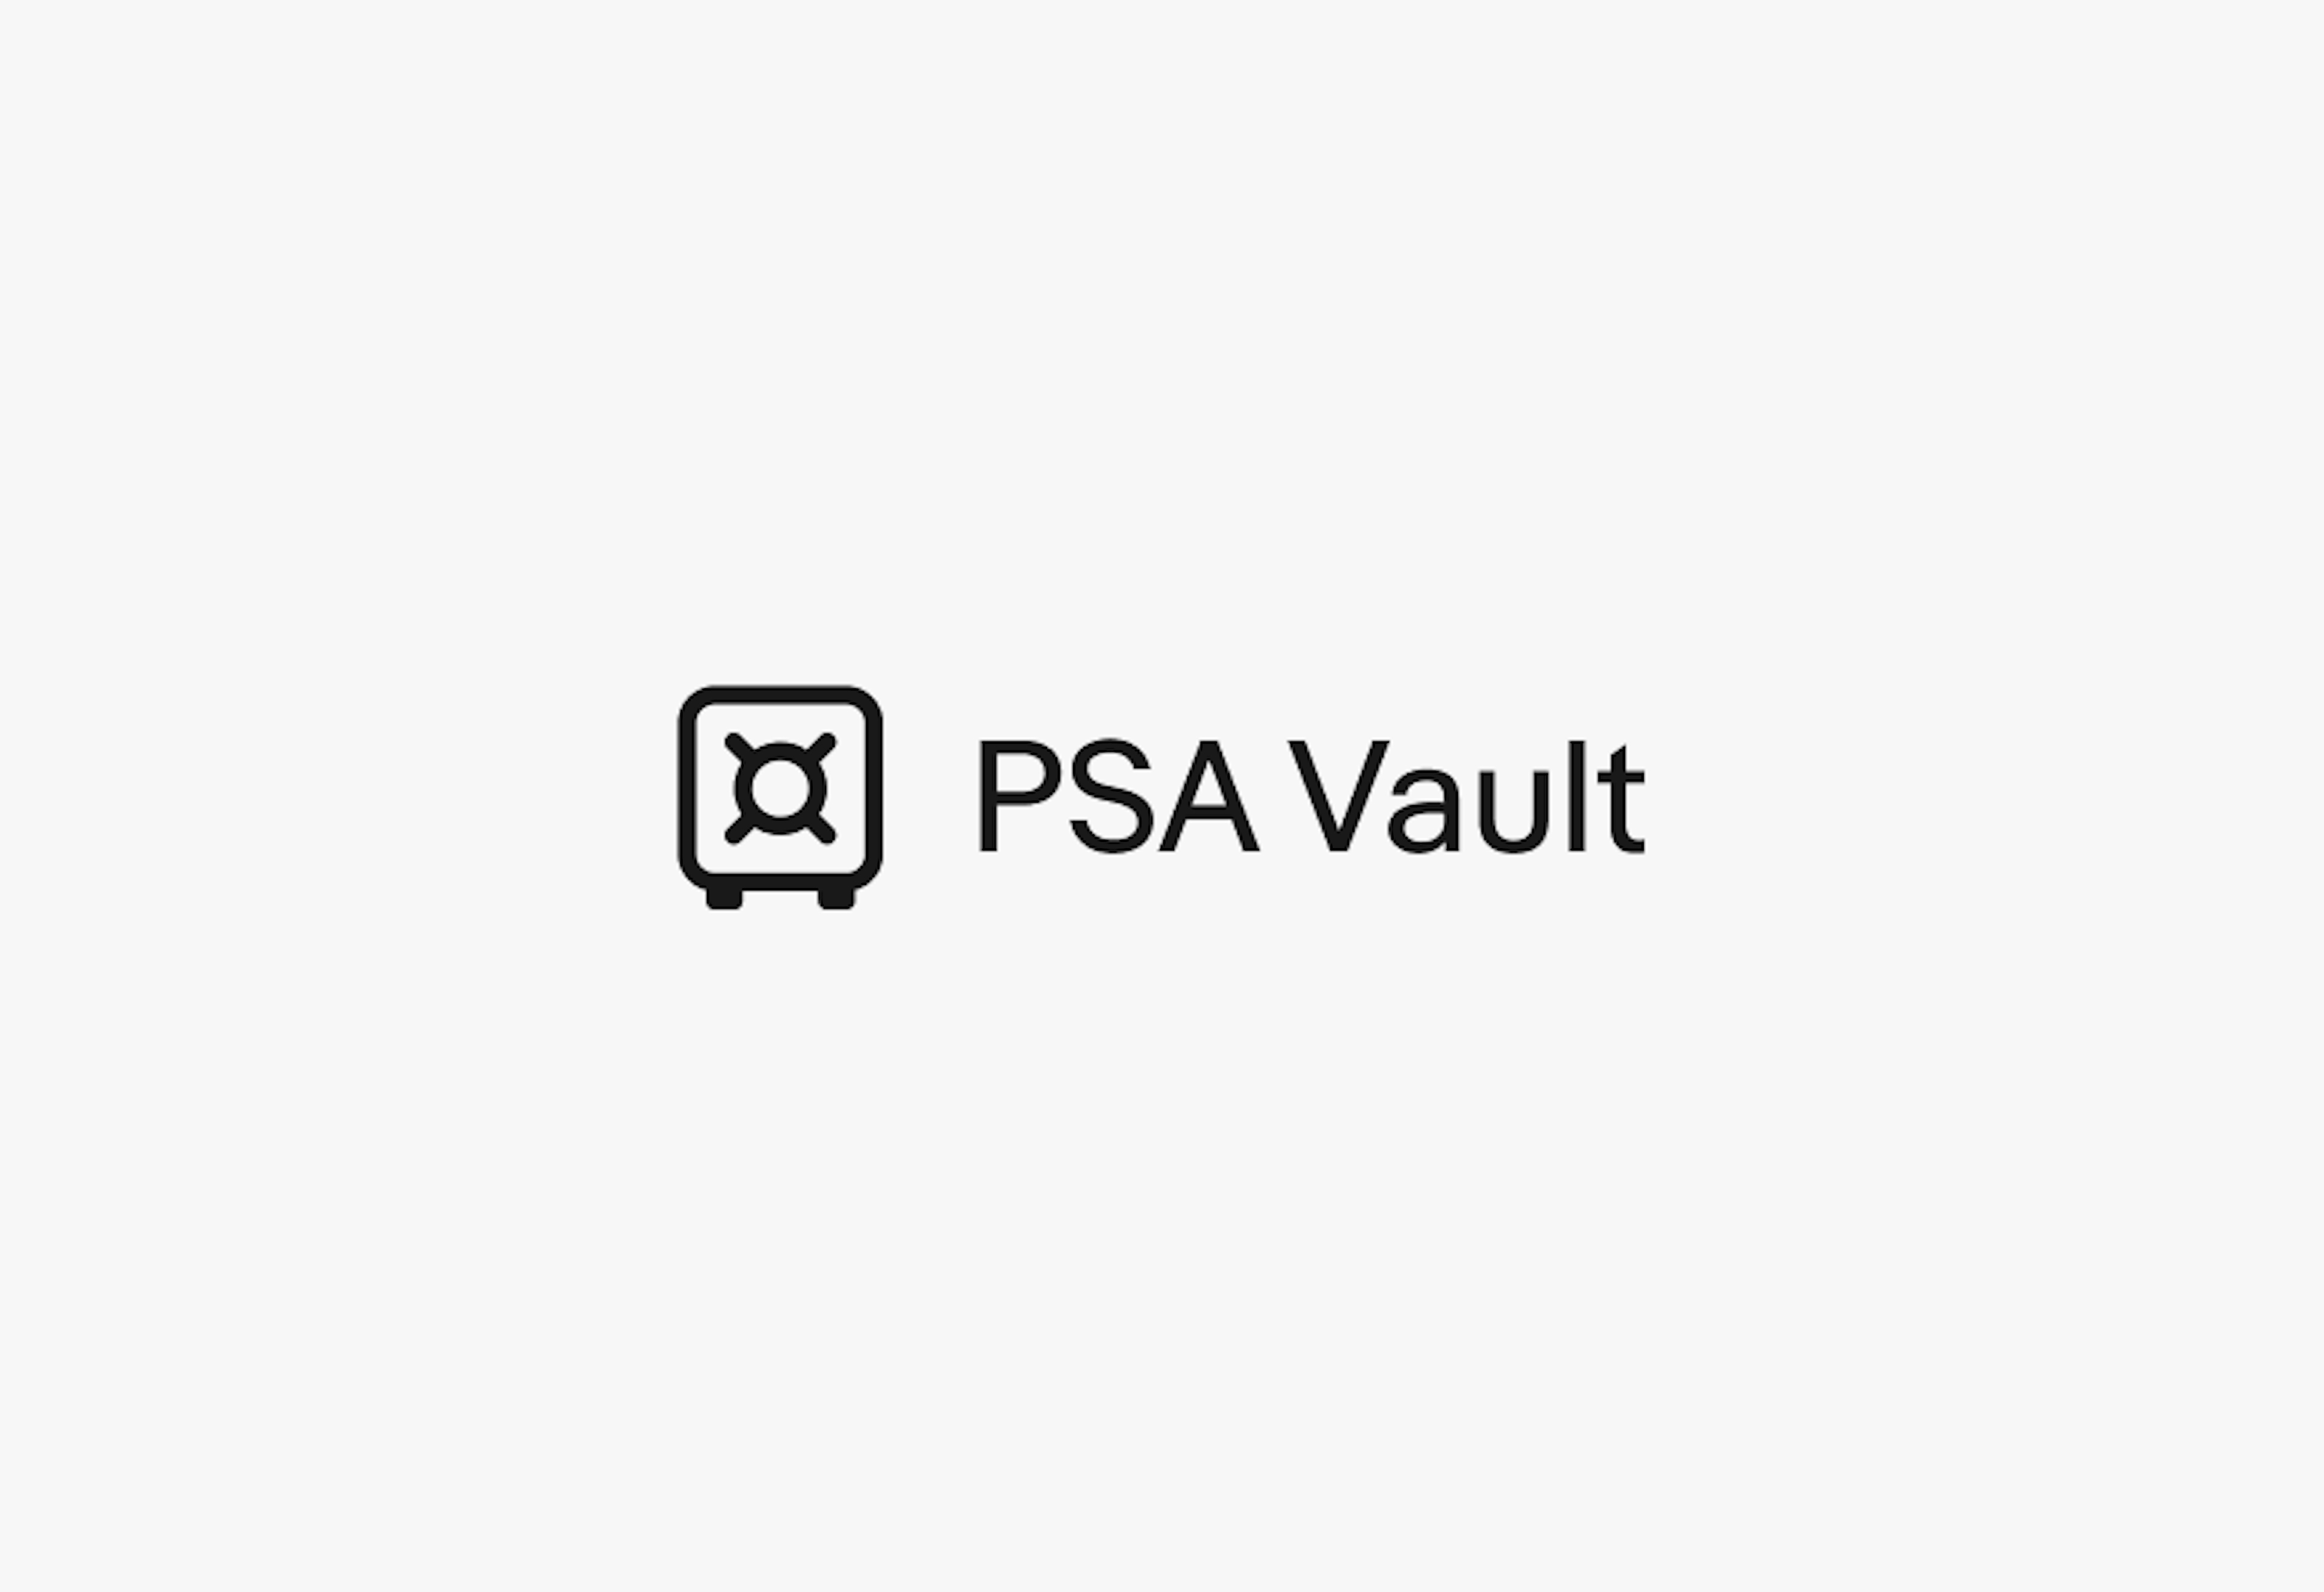 A vault icon next to “PSA Vault”.